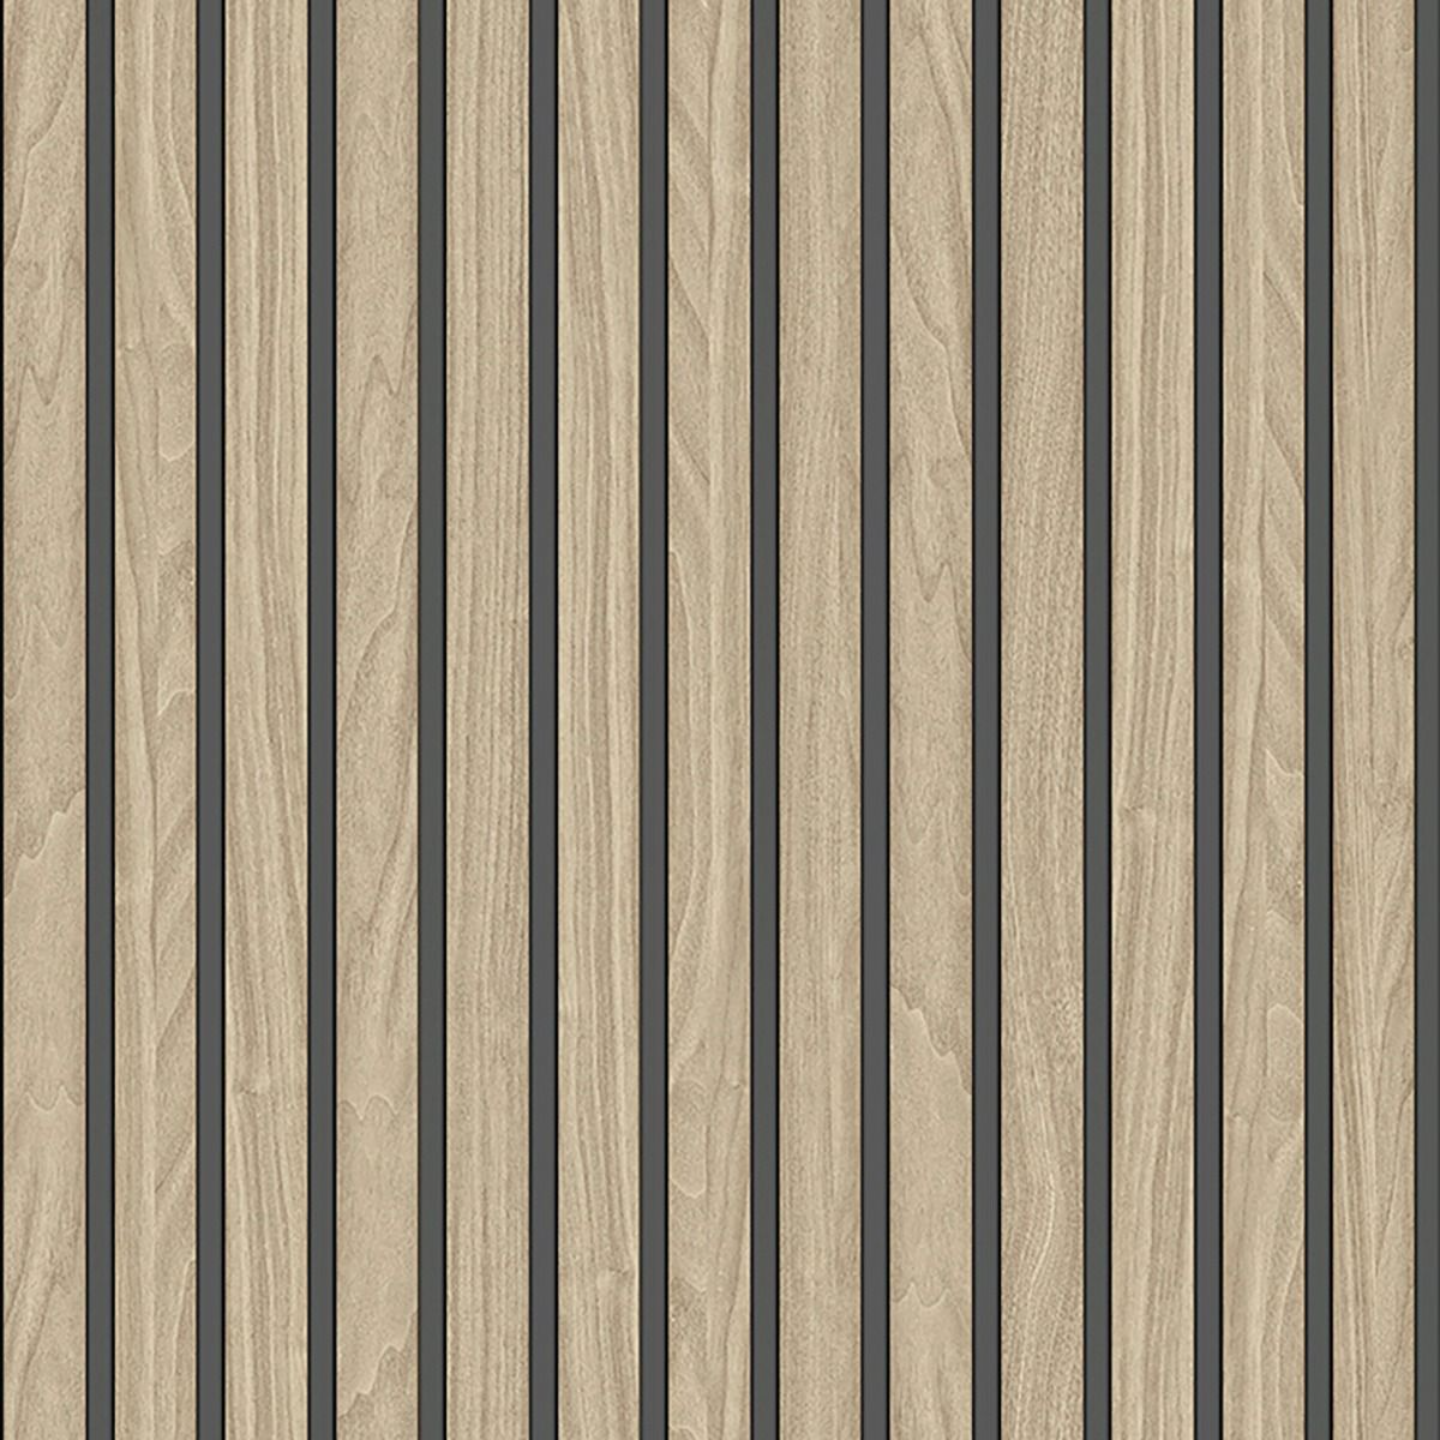 Belgravia Wood Slats Wallpaper 3D Realistic Panel Natural - Standard or  Vinyl | eBay